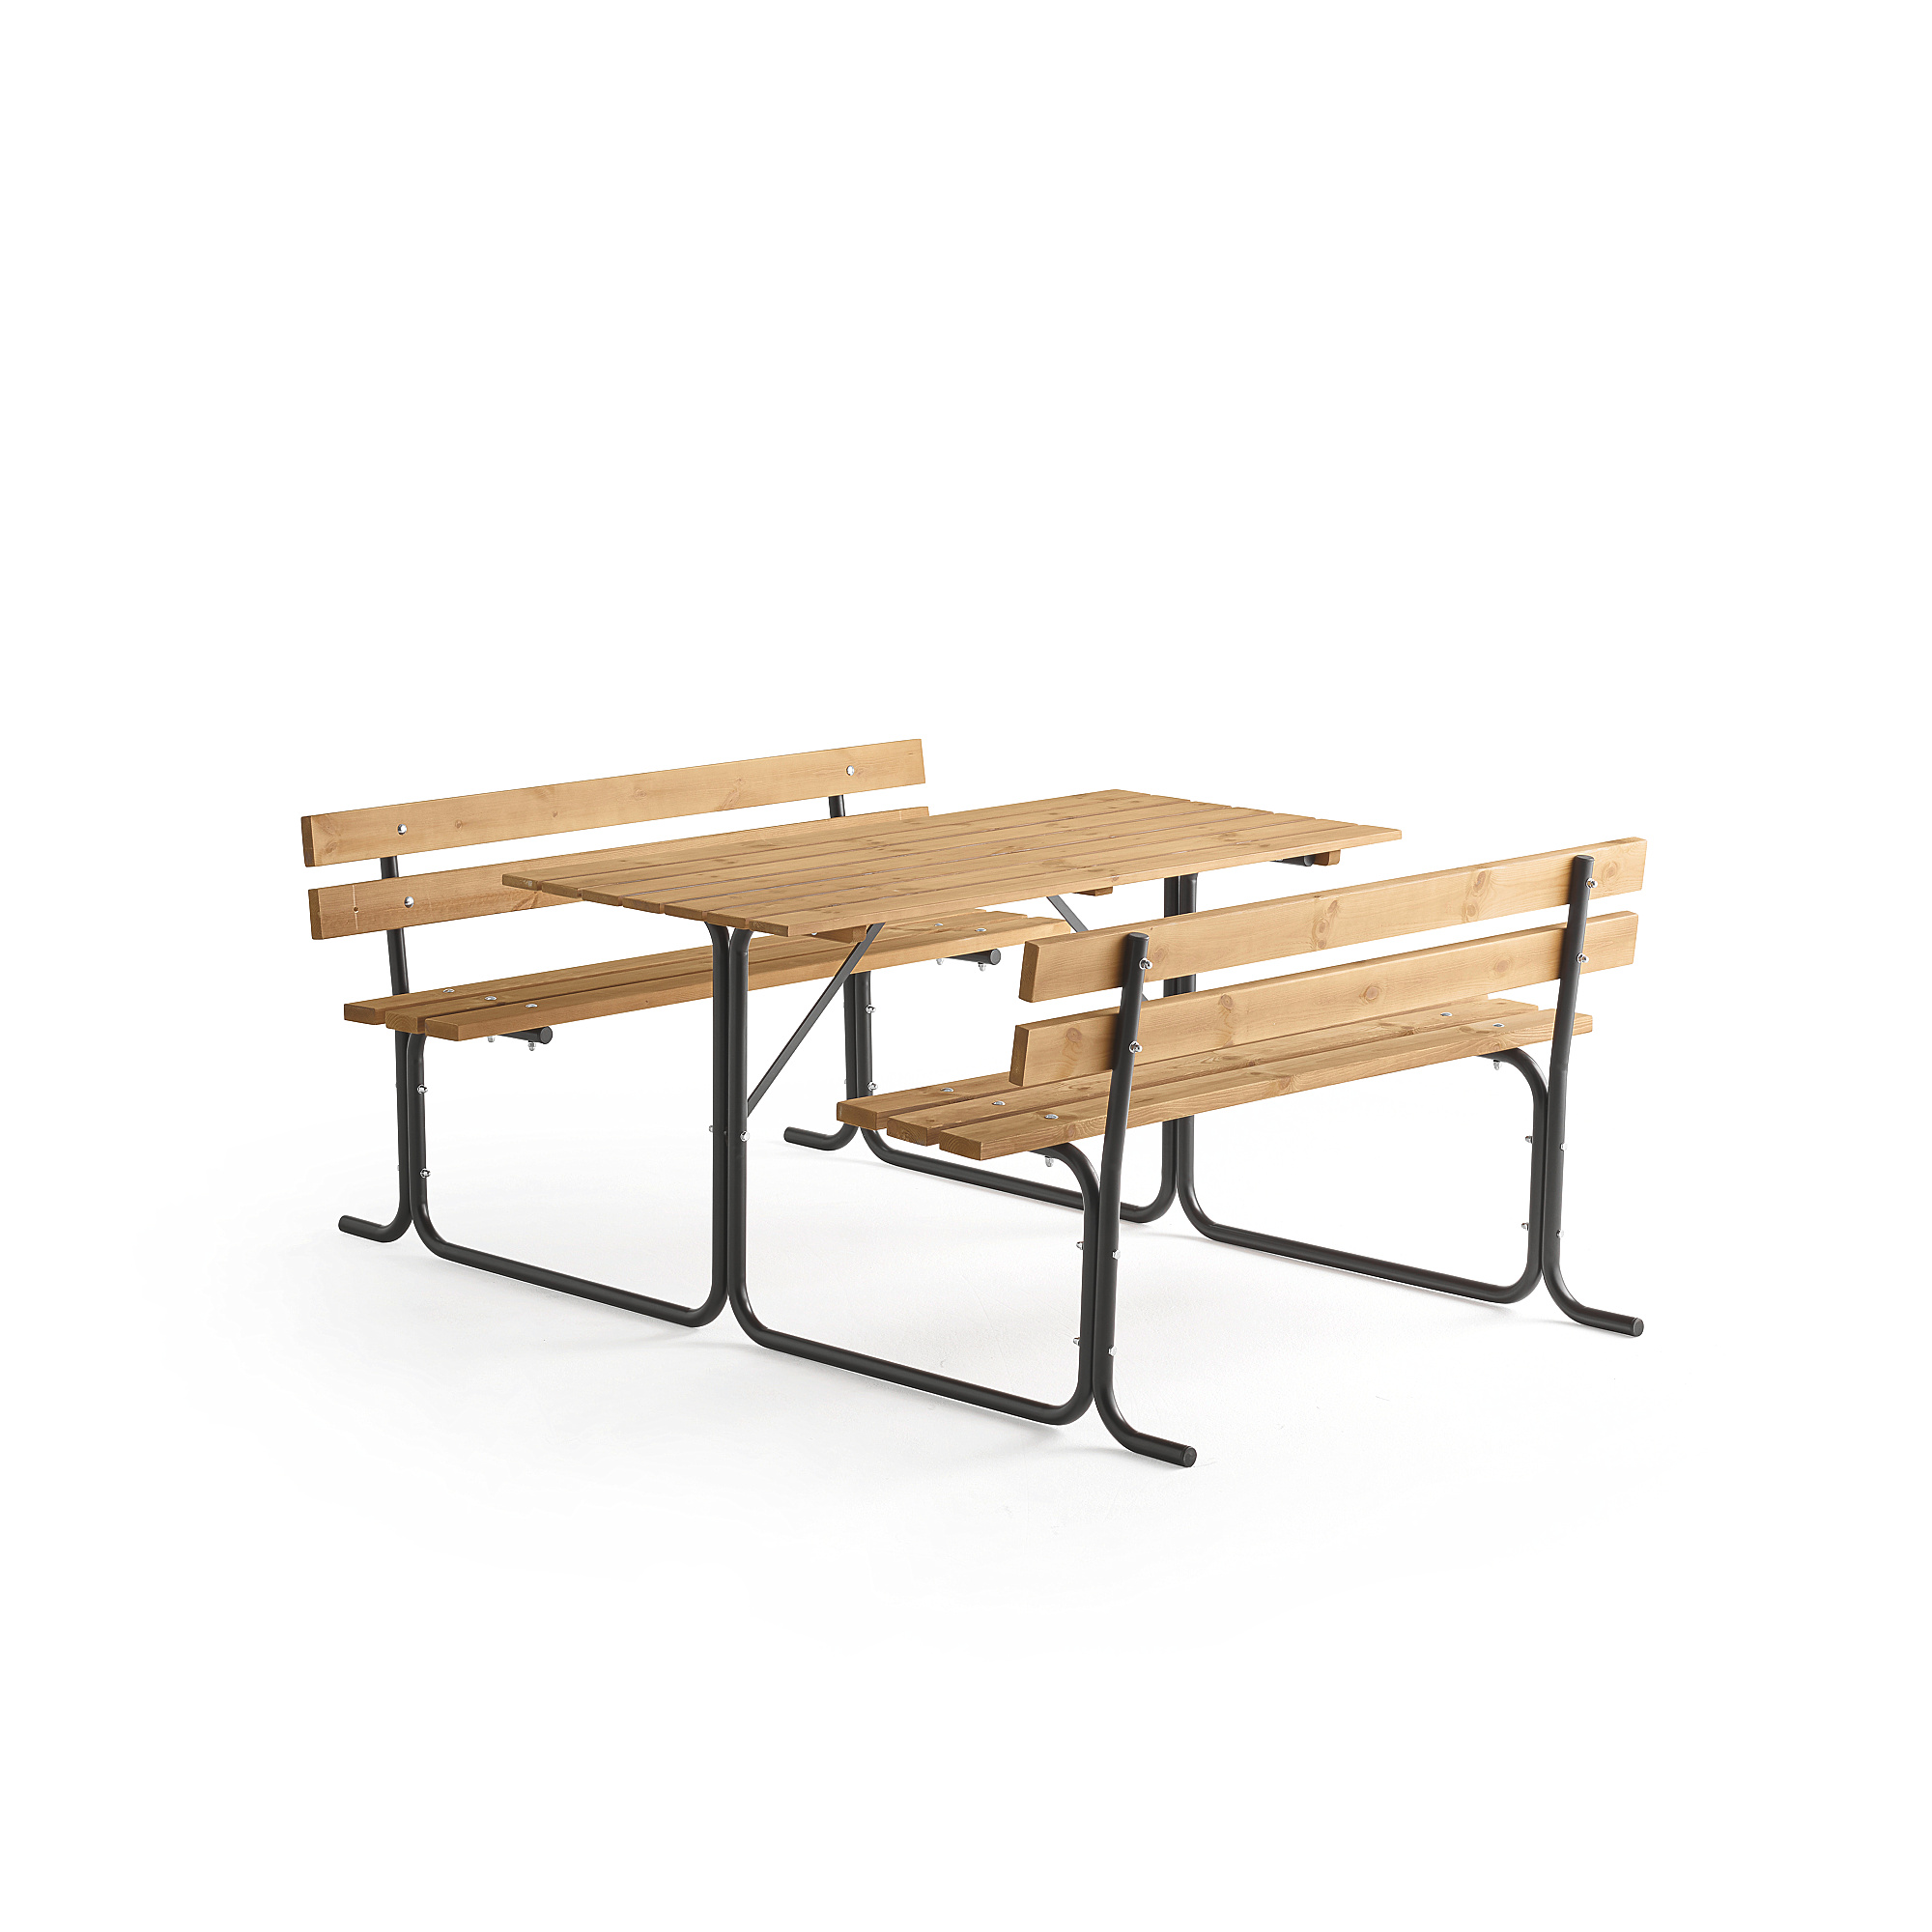 Stůl s lavicemi PARK PINE, 1500 mm, hnědý